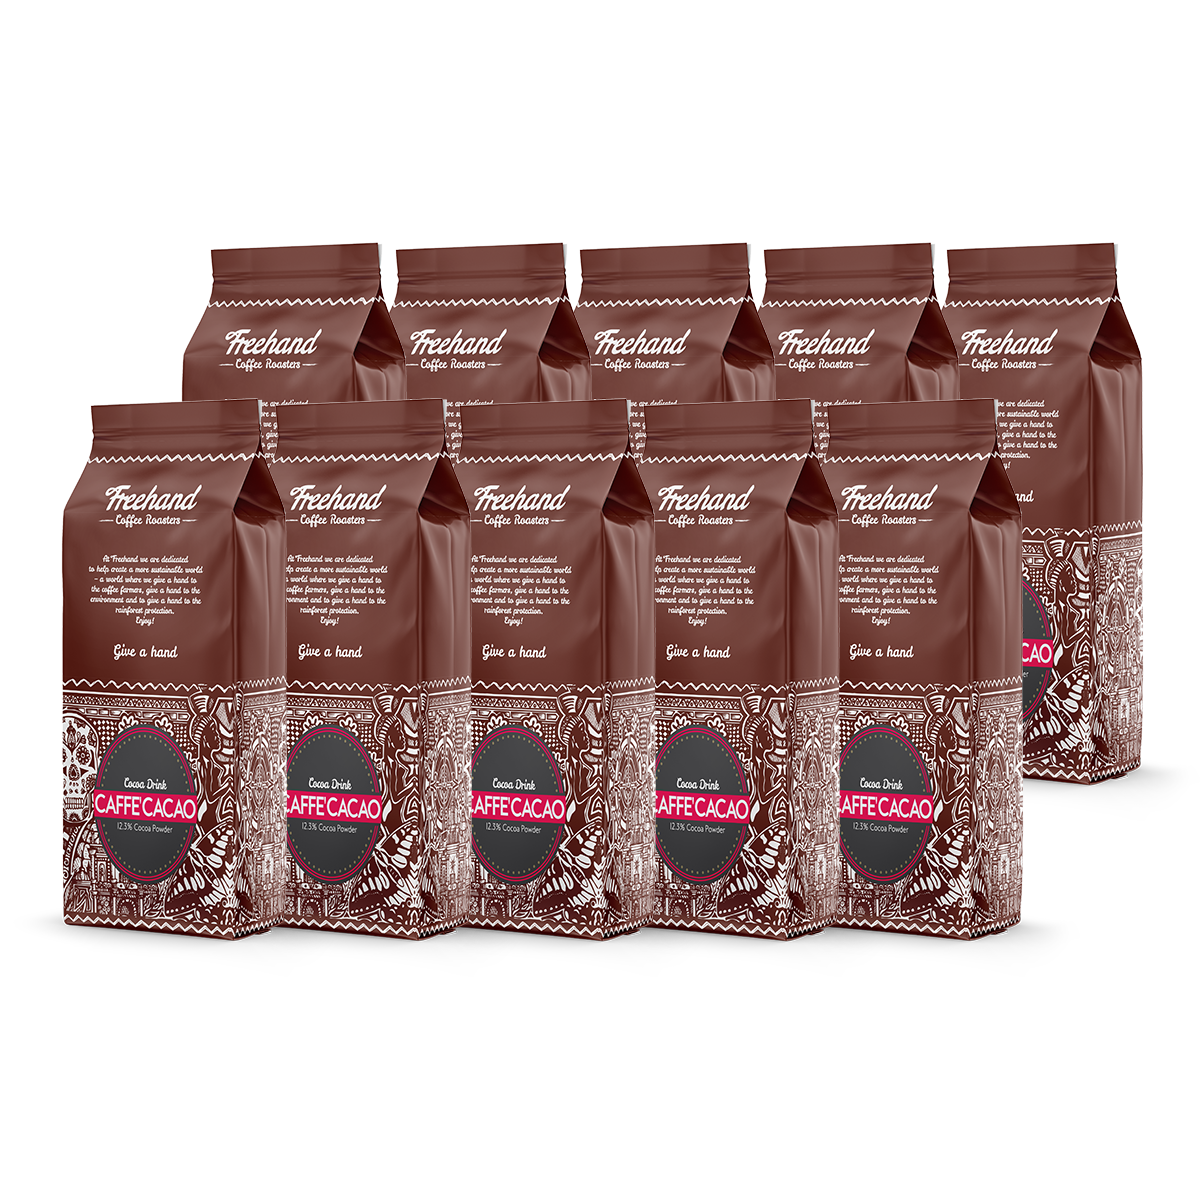 Freehand Caffe Kakao 10 kg